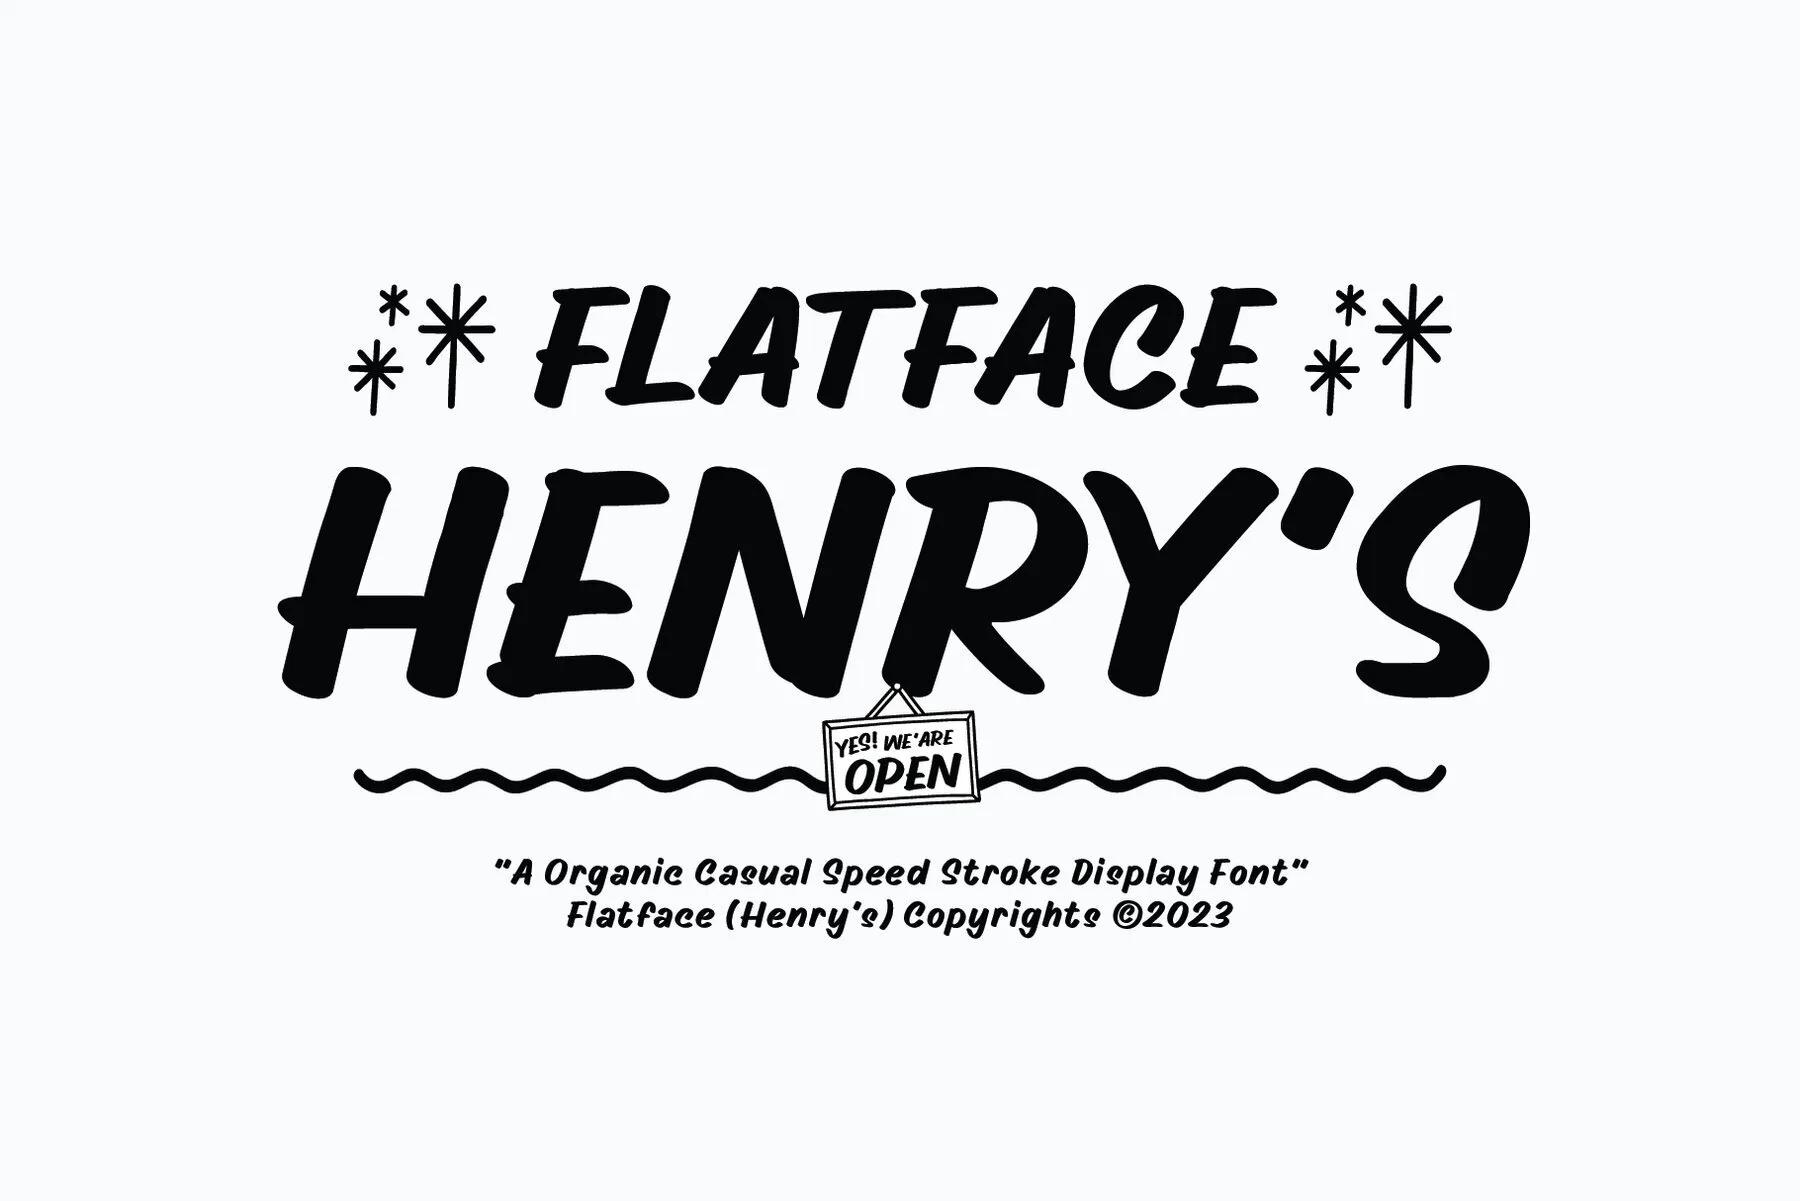 Flatface Henrys